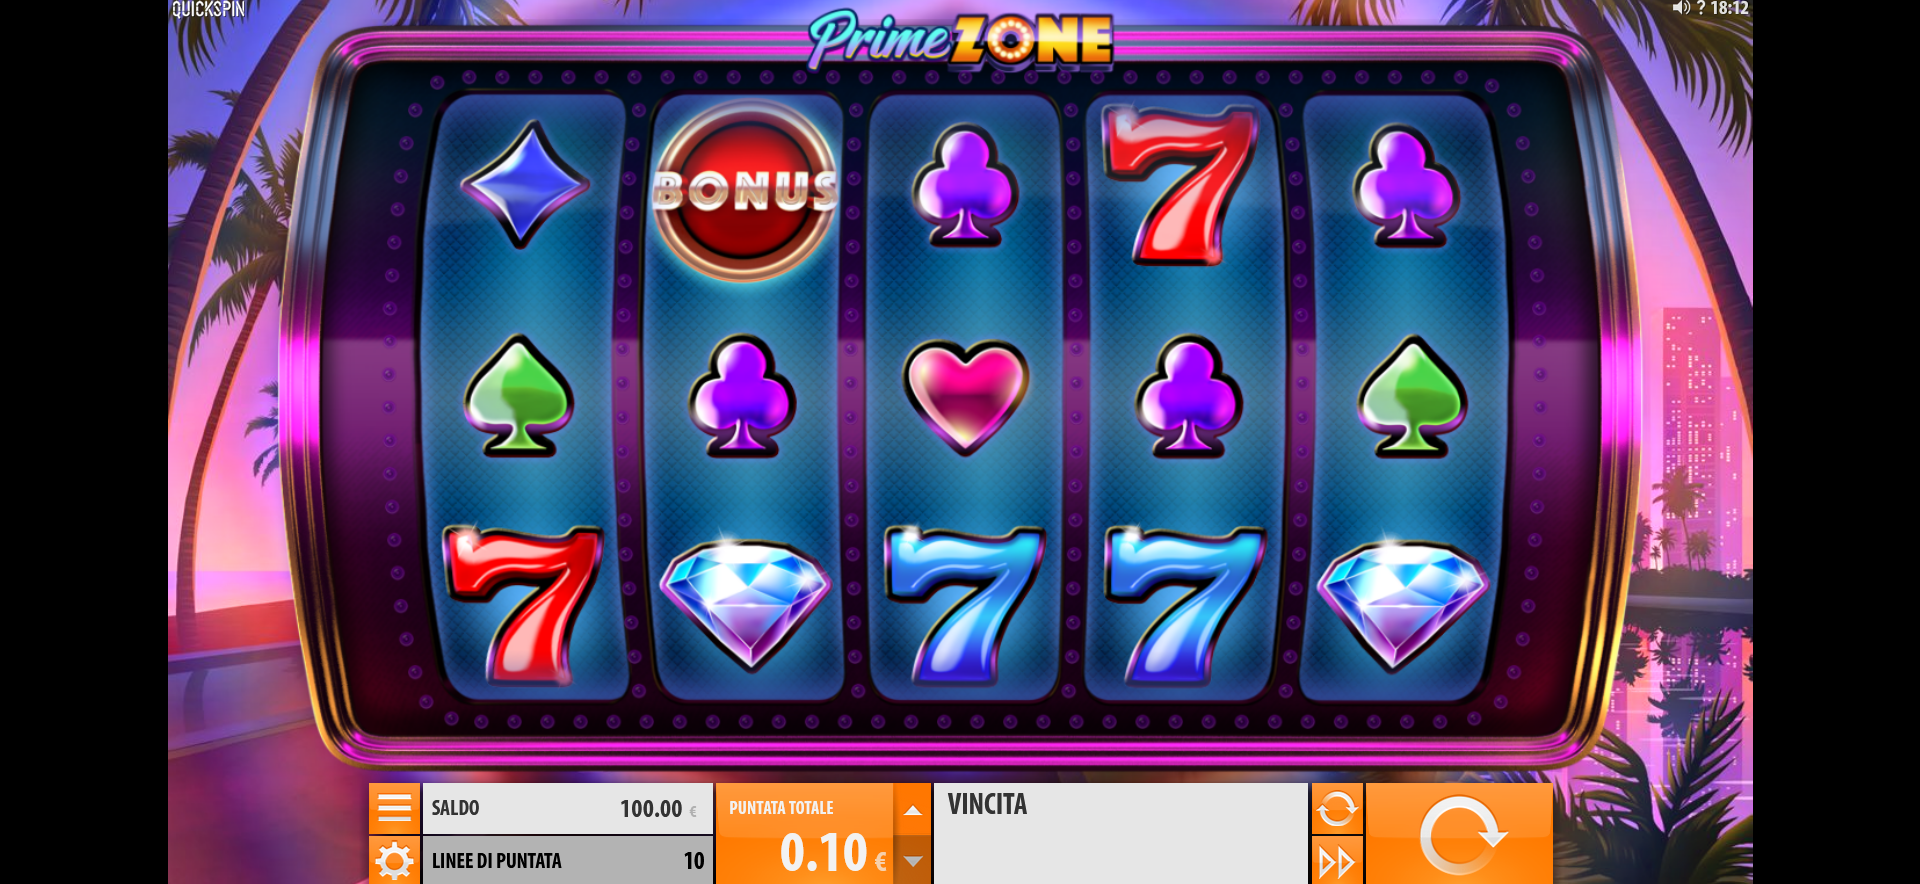 griglia del gioco slot online prime zone